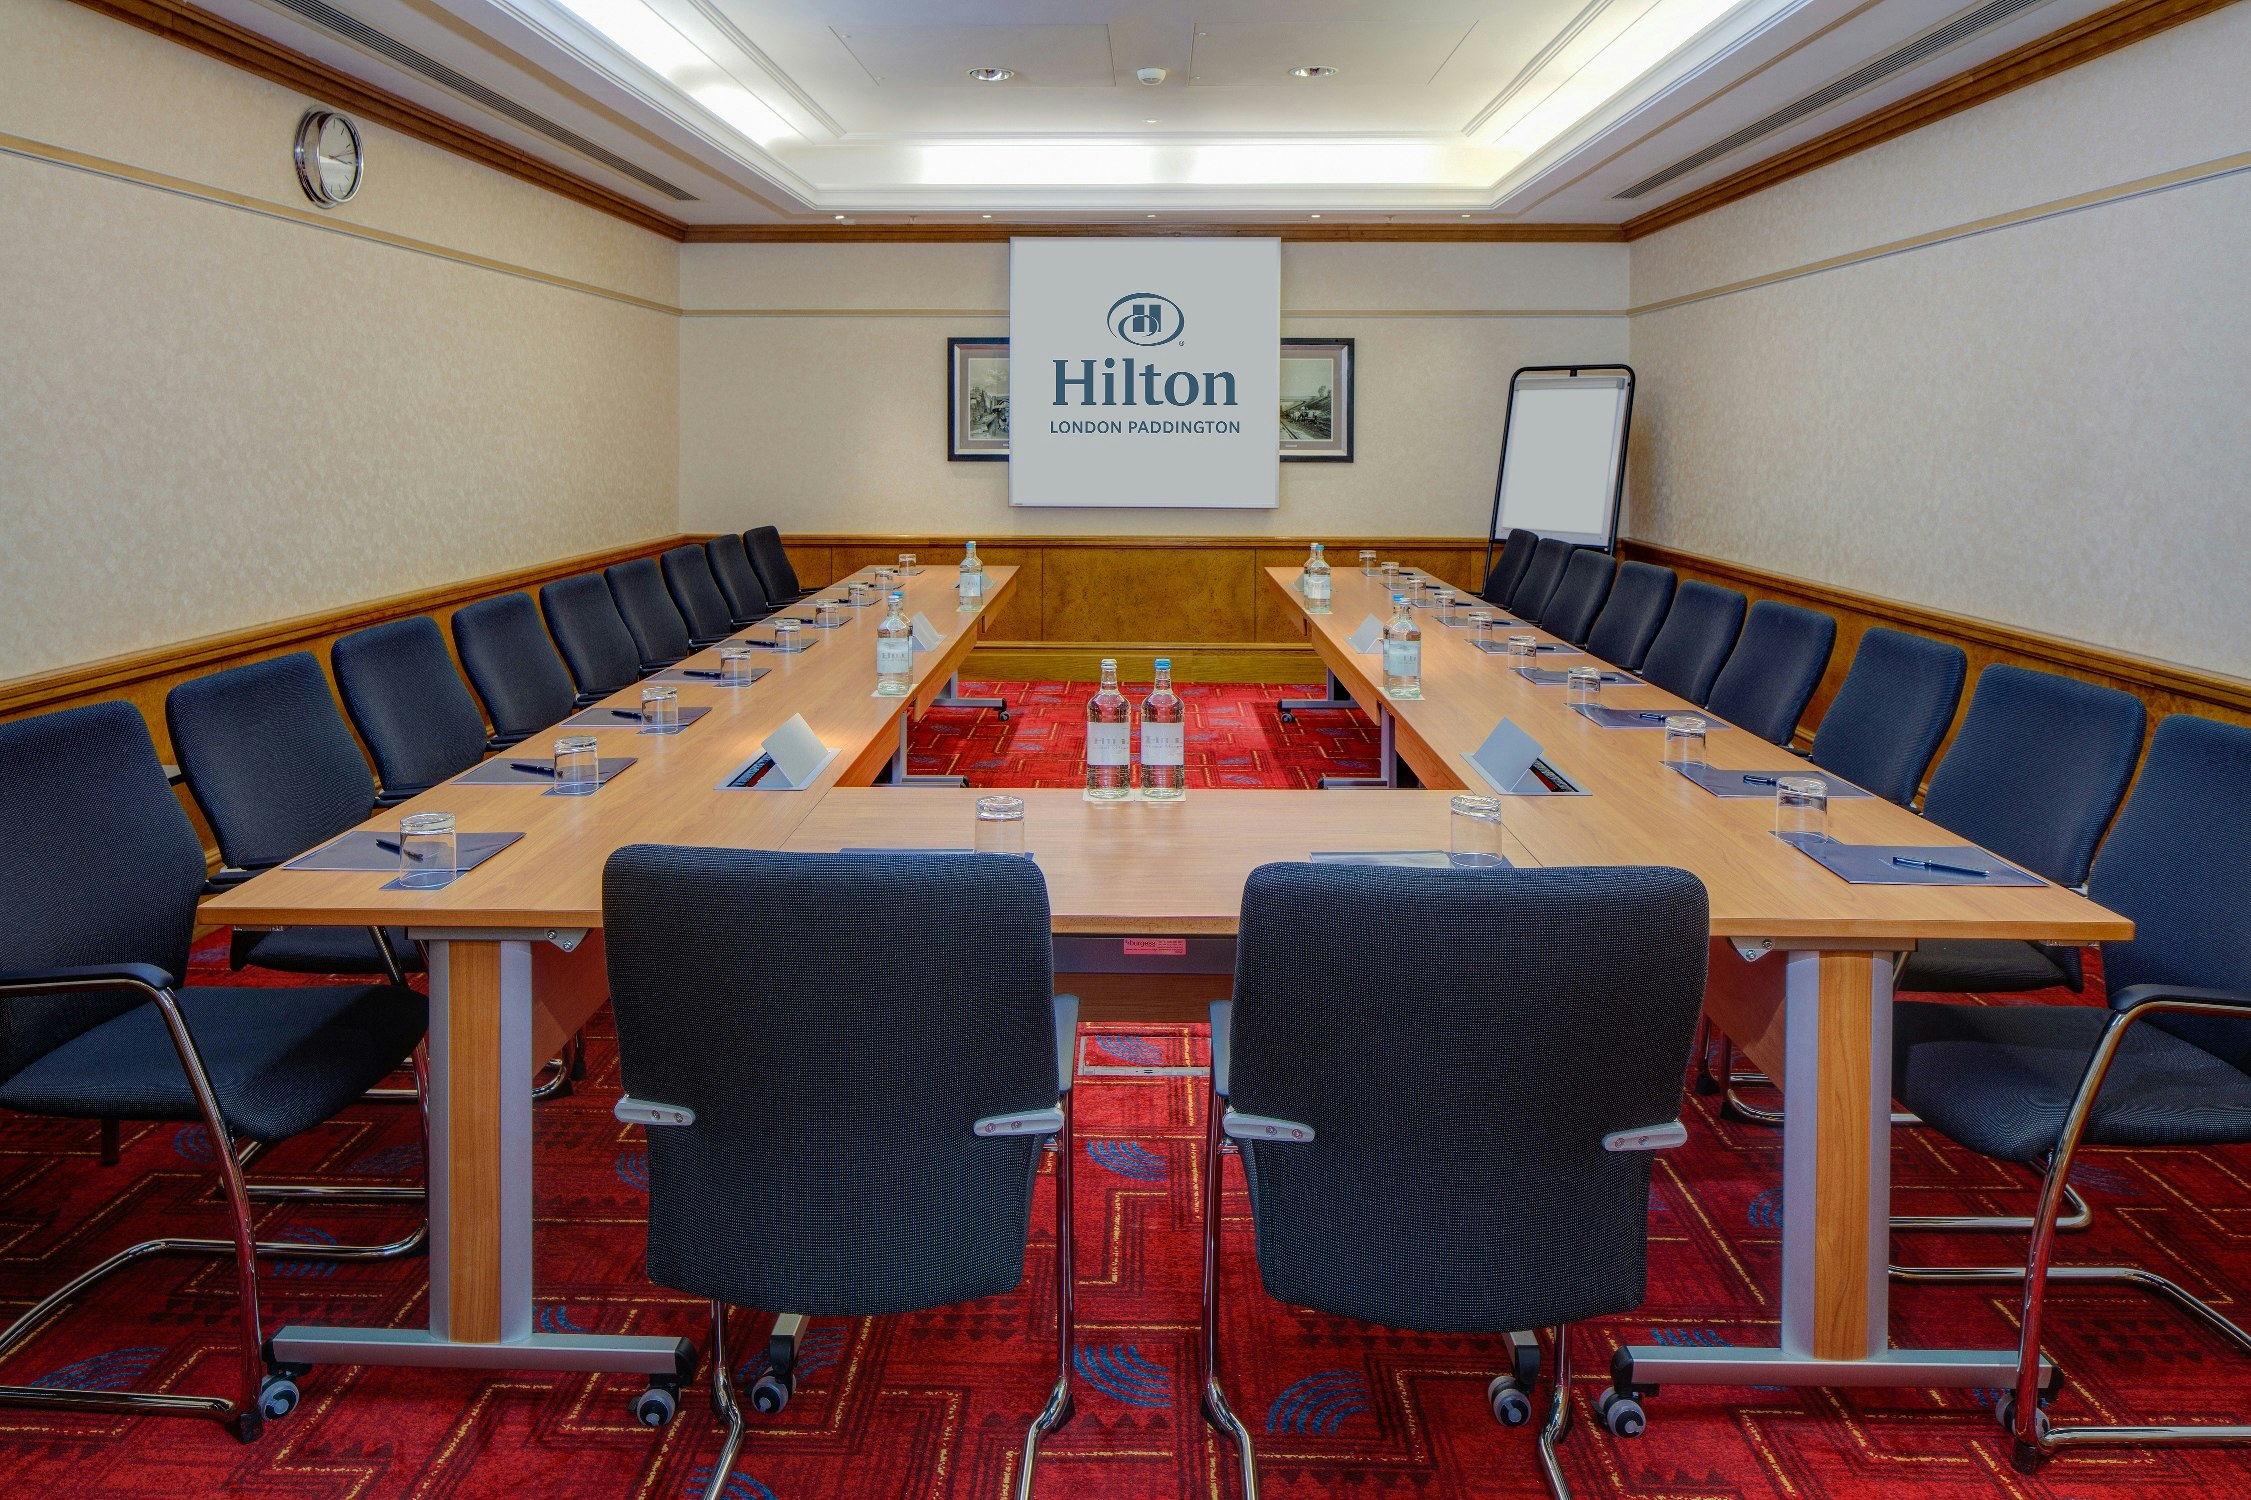 Hilton London Paddington - King George V image 3